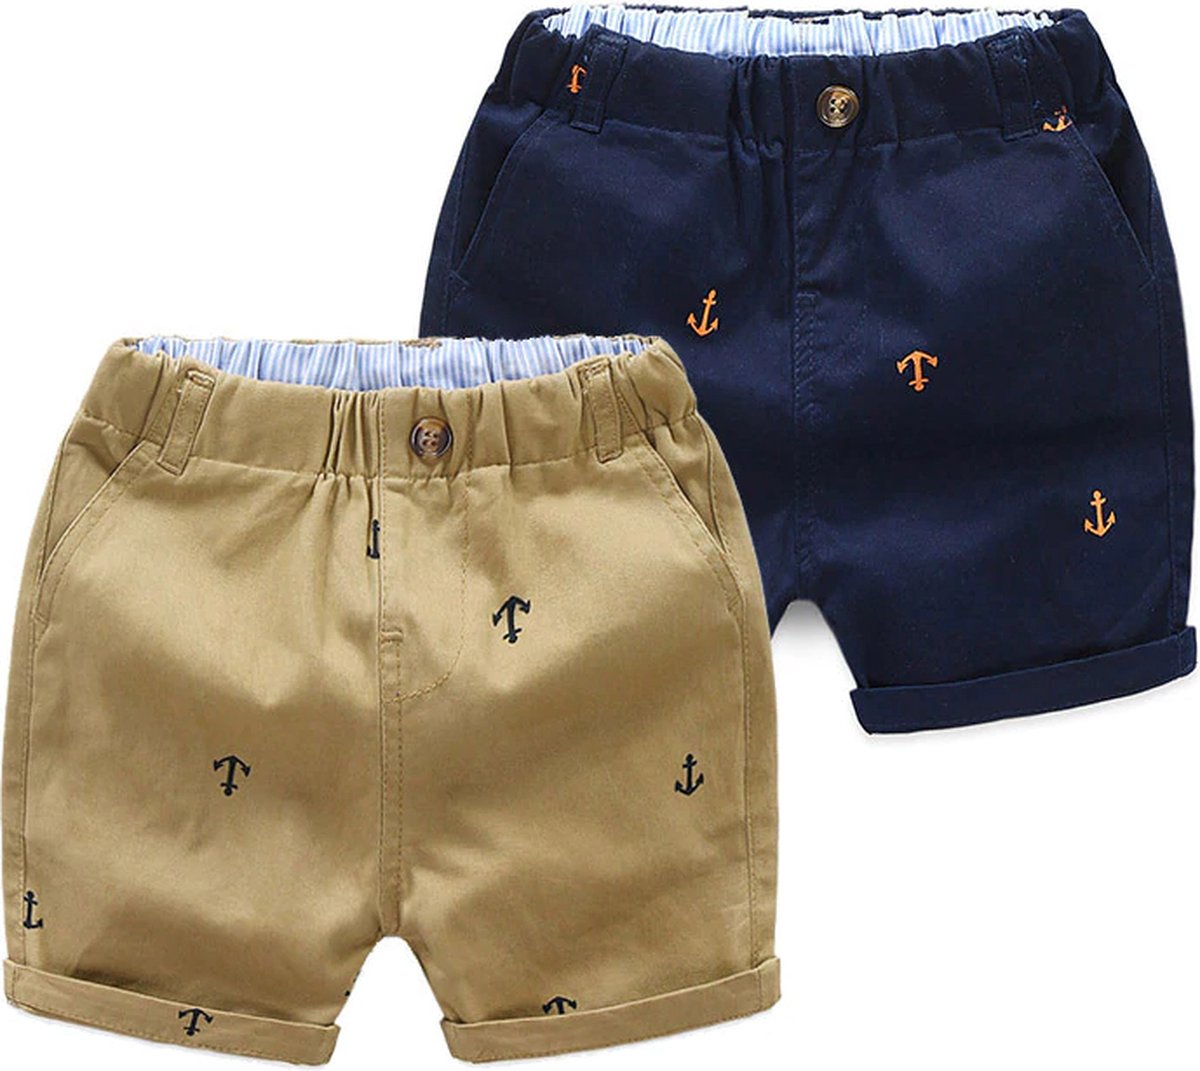 Korte broek jongens – Shorts – Ankers – Khaki en Donkerblauw – Leeftijd ca. 2 – 3 jaar – Set van 2 stuks